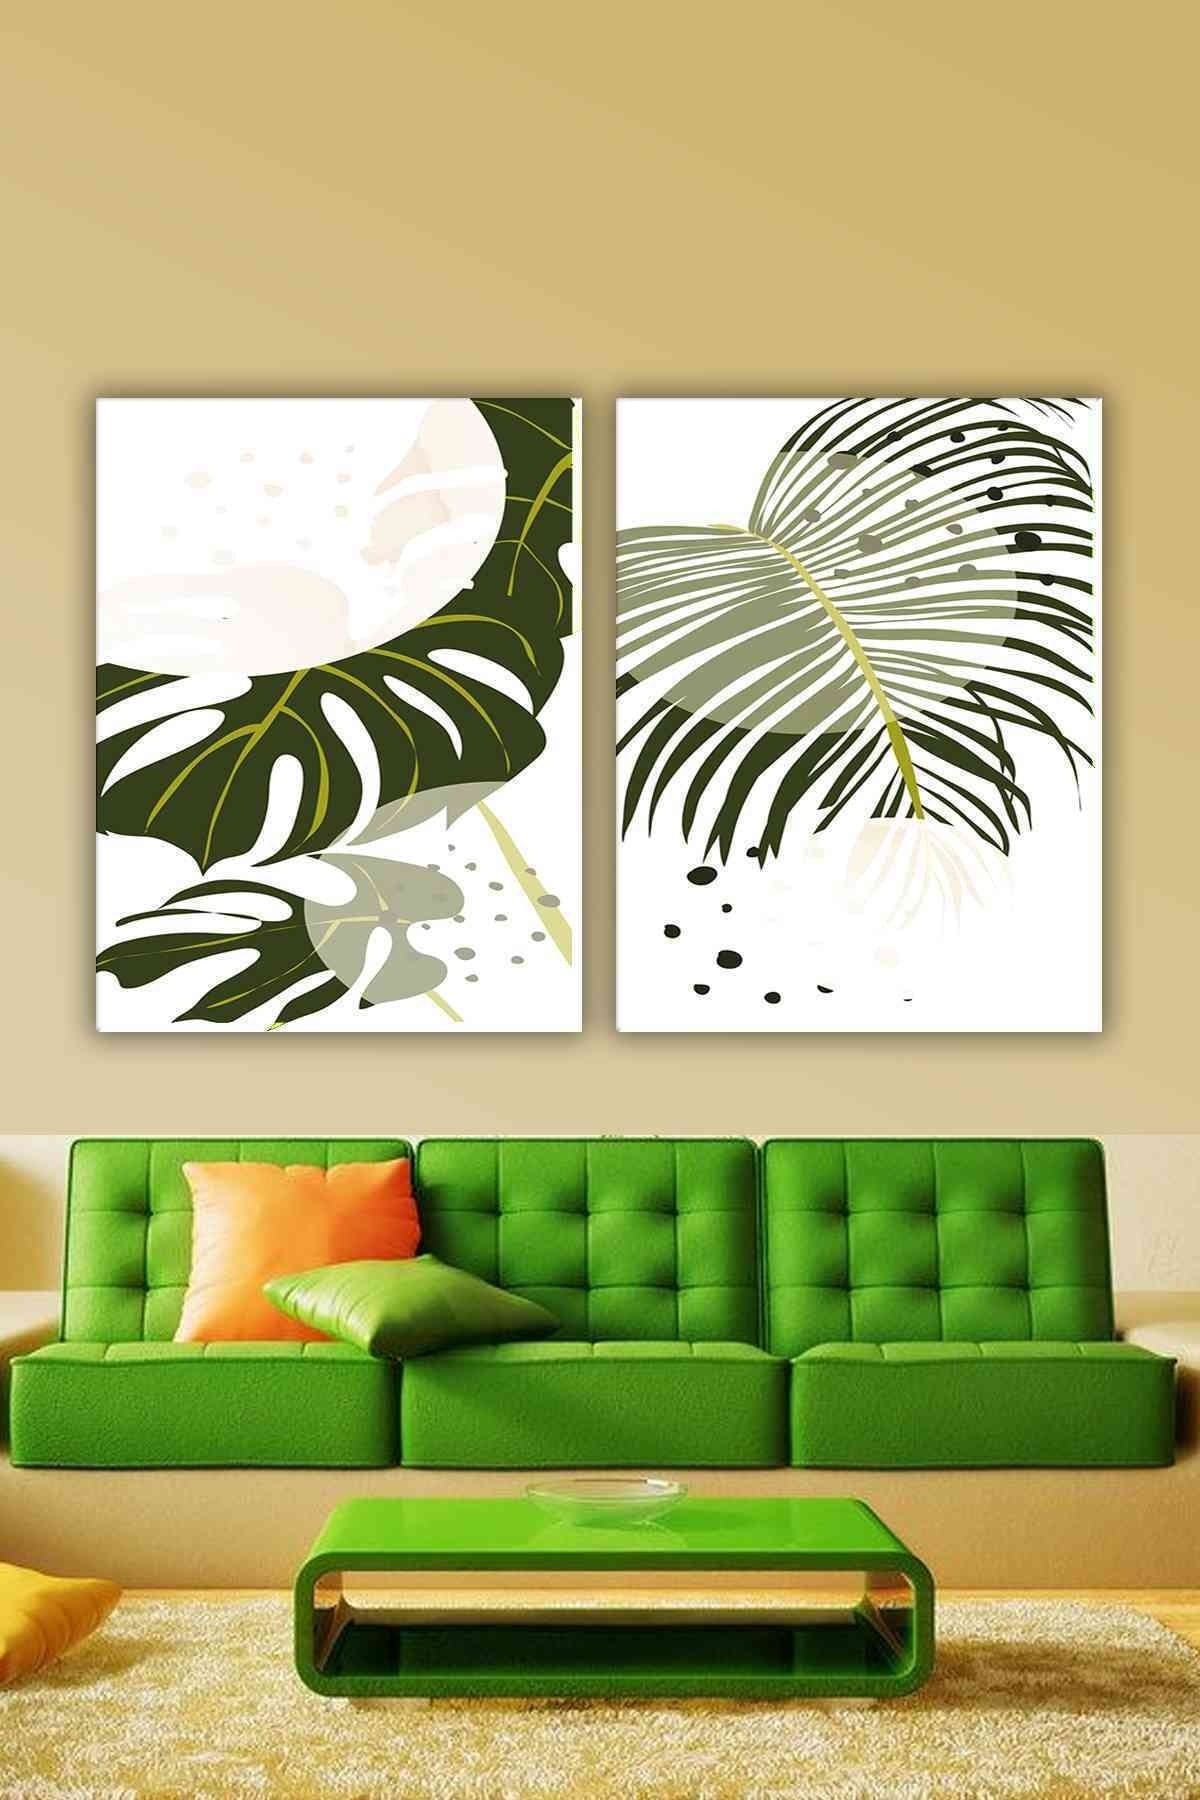 CLZ104 Parçalı Dekoratif Yeşil Yapraklı Soyut Tablo ( Salon)   (100 x 70) cm